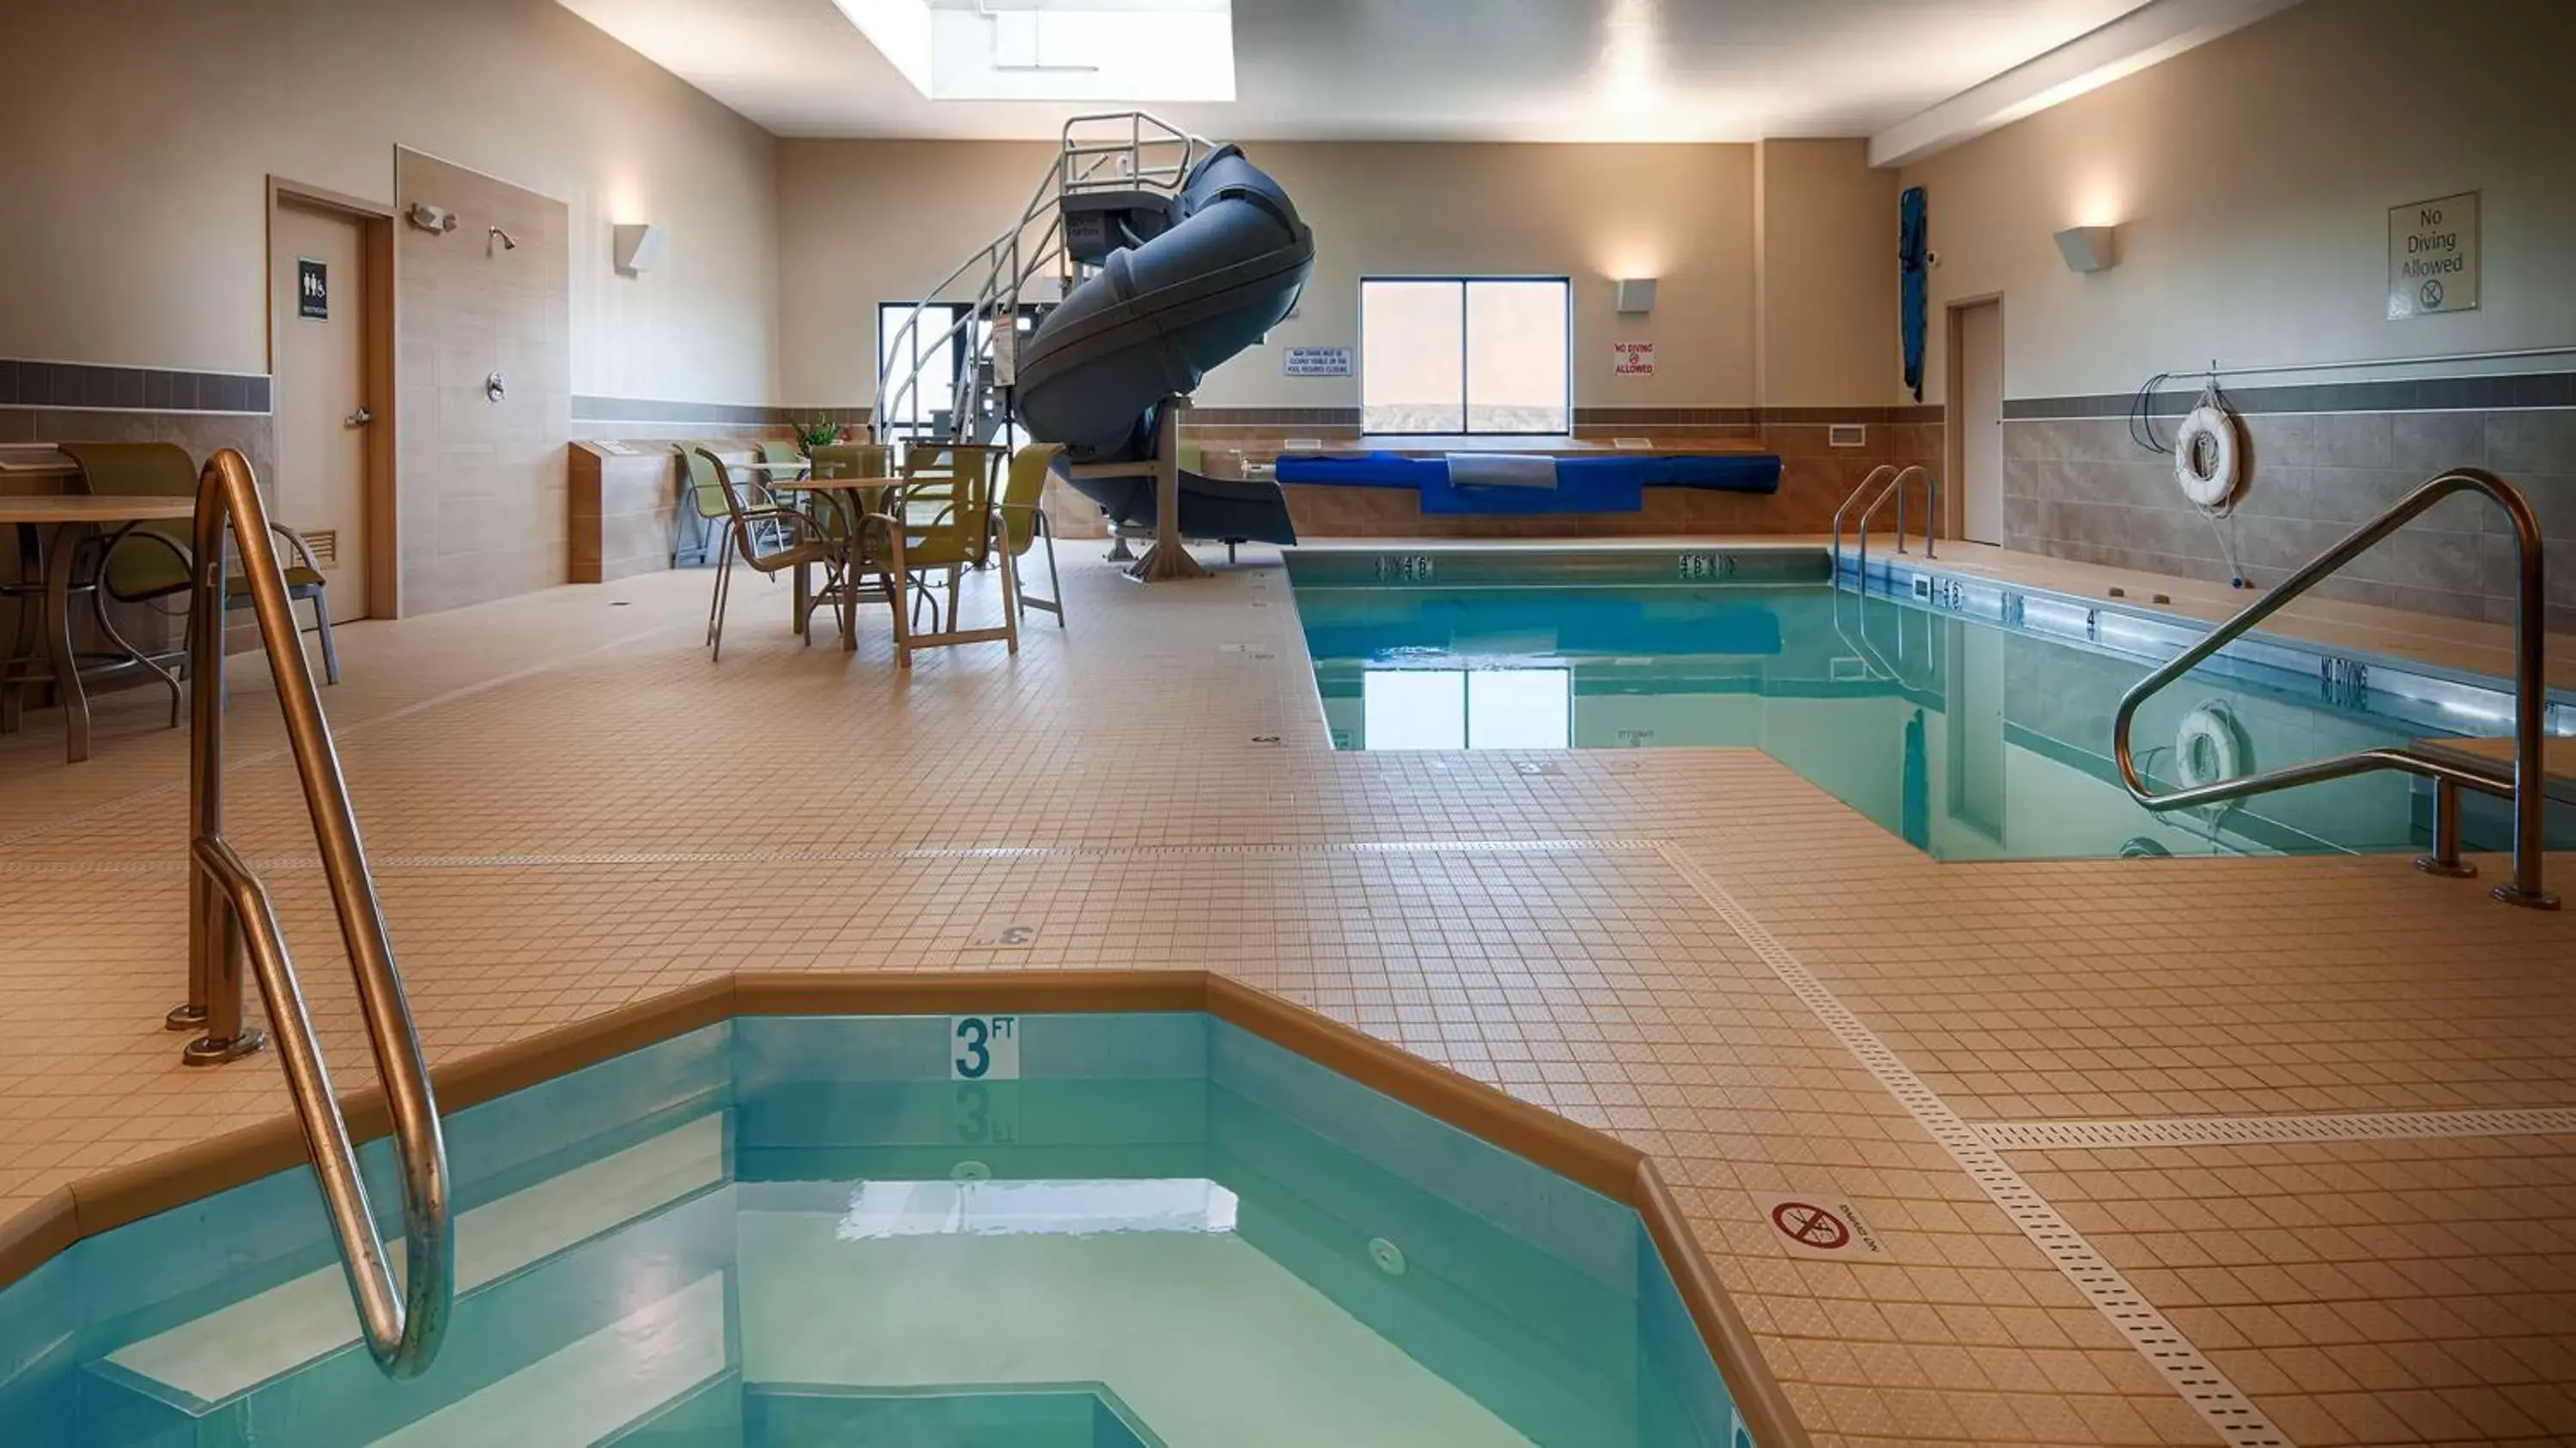 On site, Swimming Pool in Best Western Plus Havre Inn & Suites